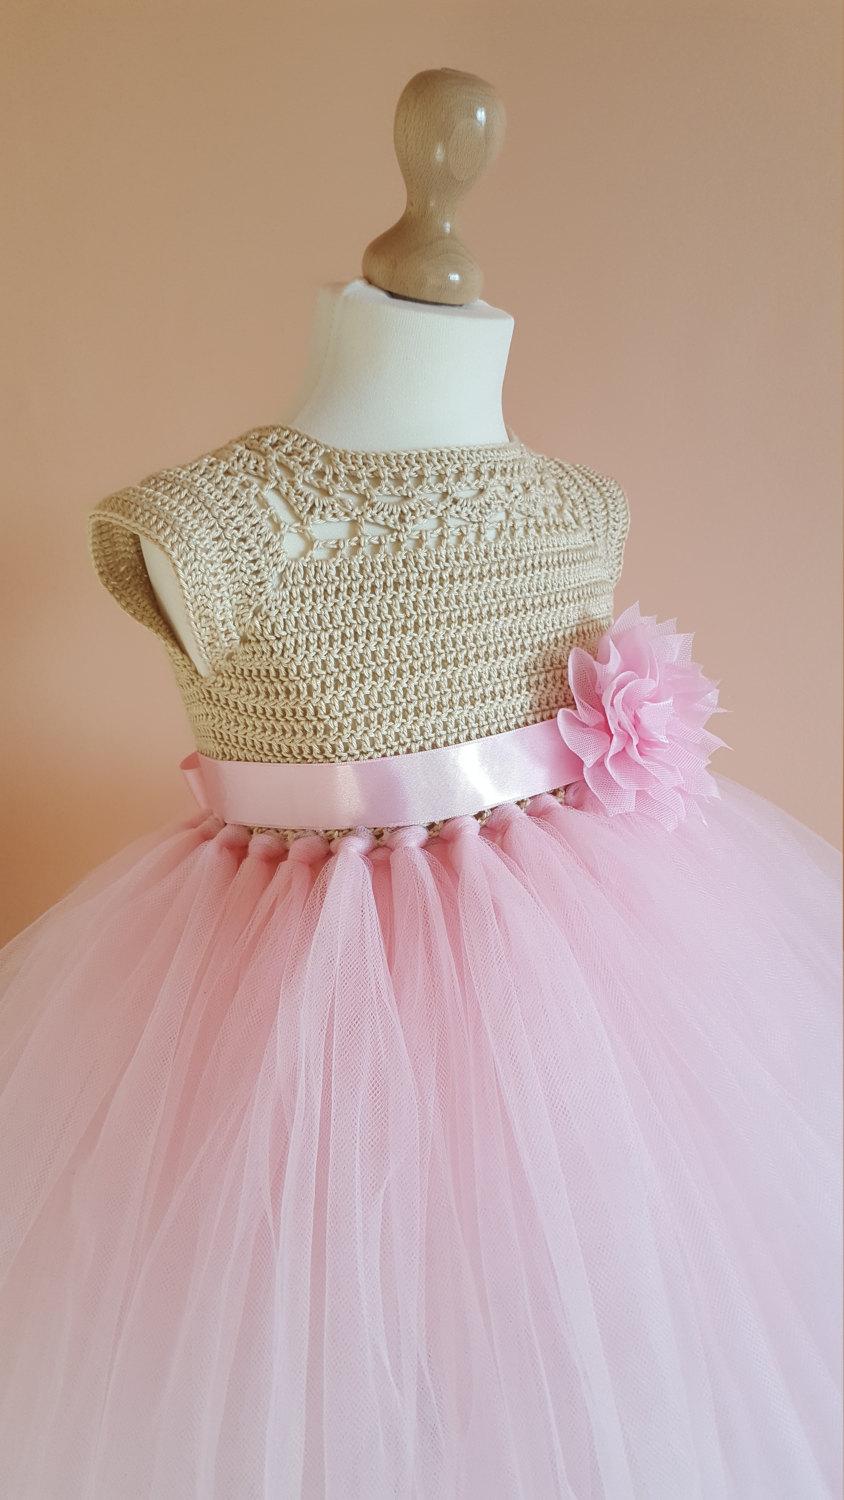 Wedding - tutu dress, crochet dress, crochet yoke, princess dress, bridesmaid dress,gold dress, baby dress, toddler dress, baptism dress, flower girl